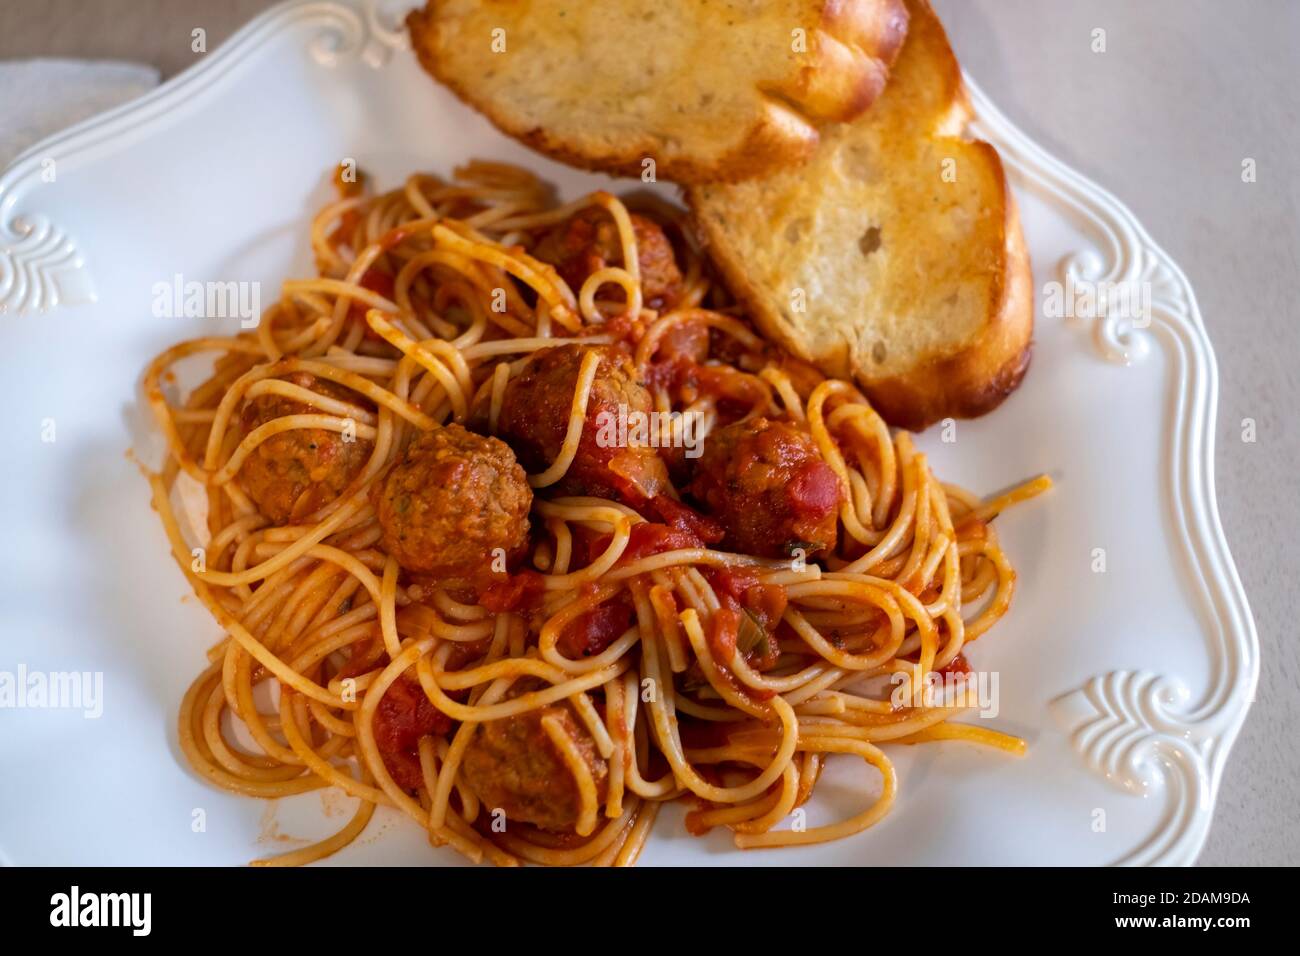 Spaghetti cuits et boulettes de bœuf sur une assiette blanche avec pain à l'ail grillé. Gros plan. Banque D'Images